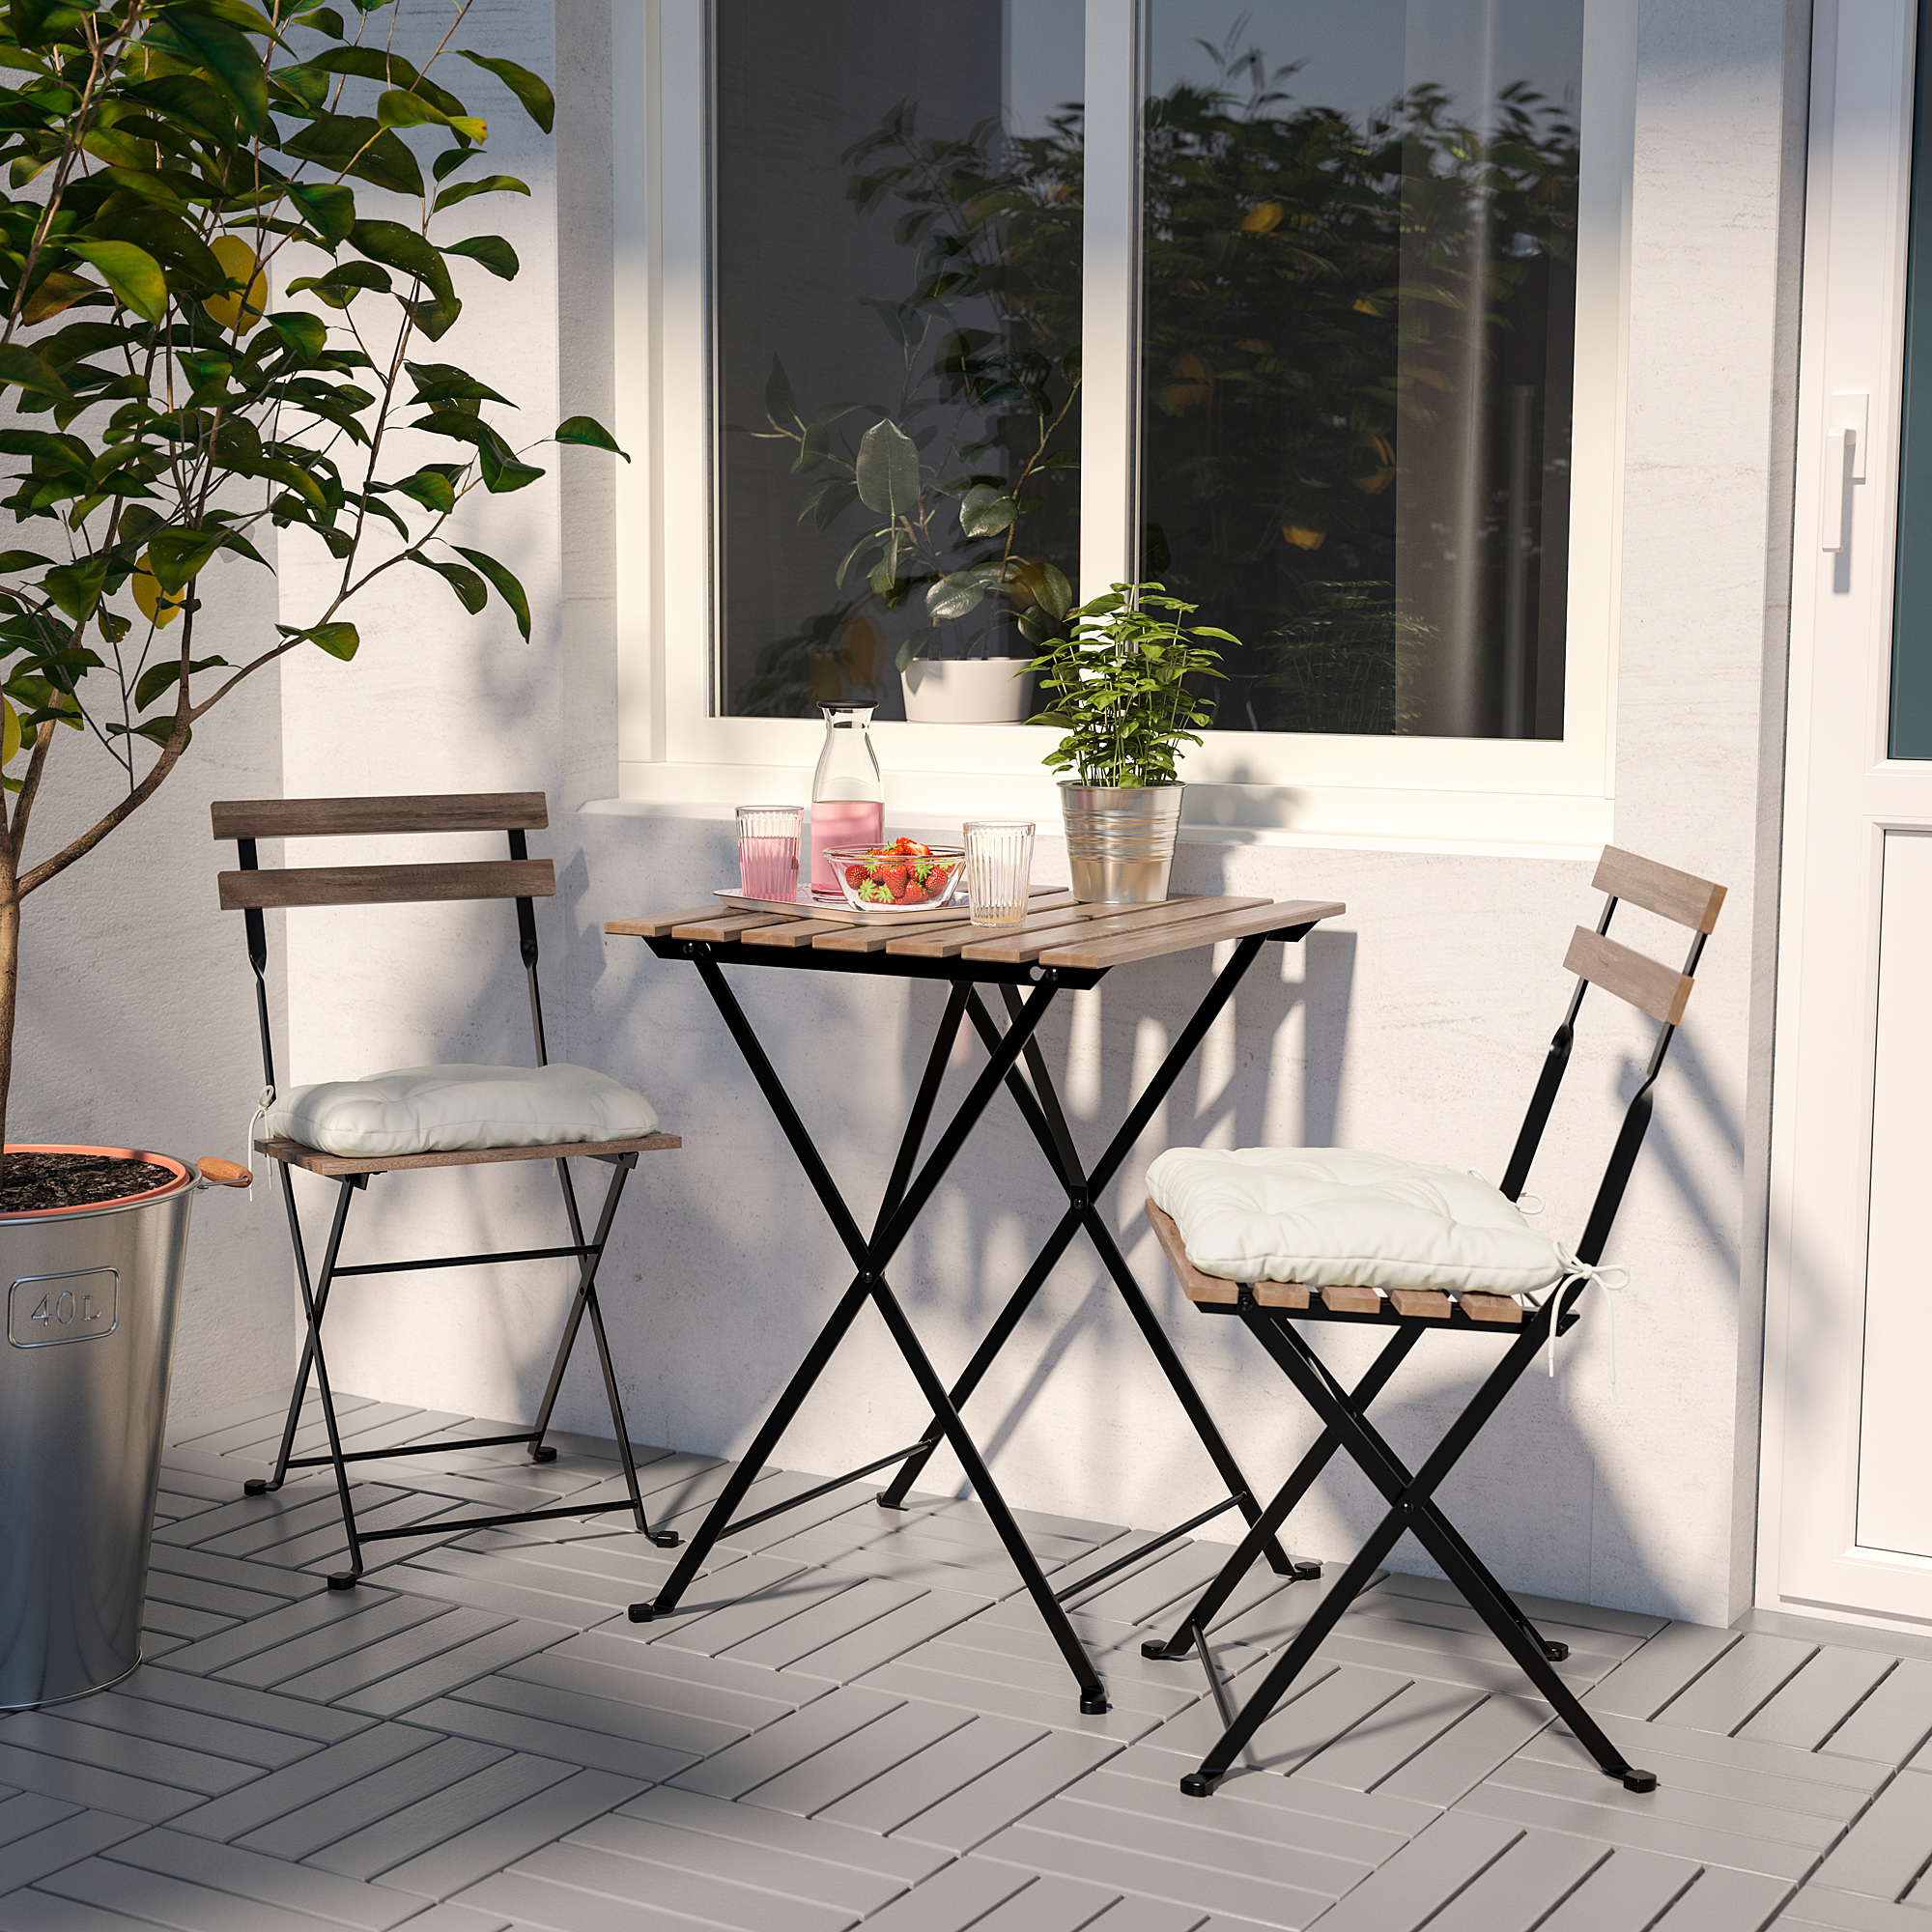 TÄRNÖ table+2 chairs, outdoor